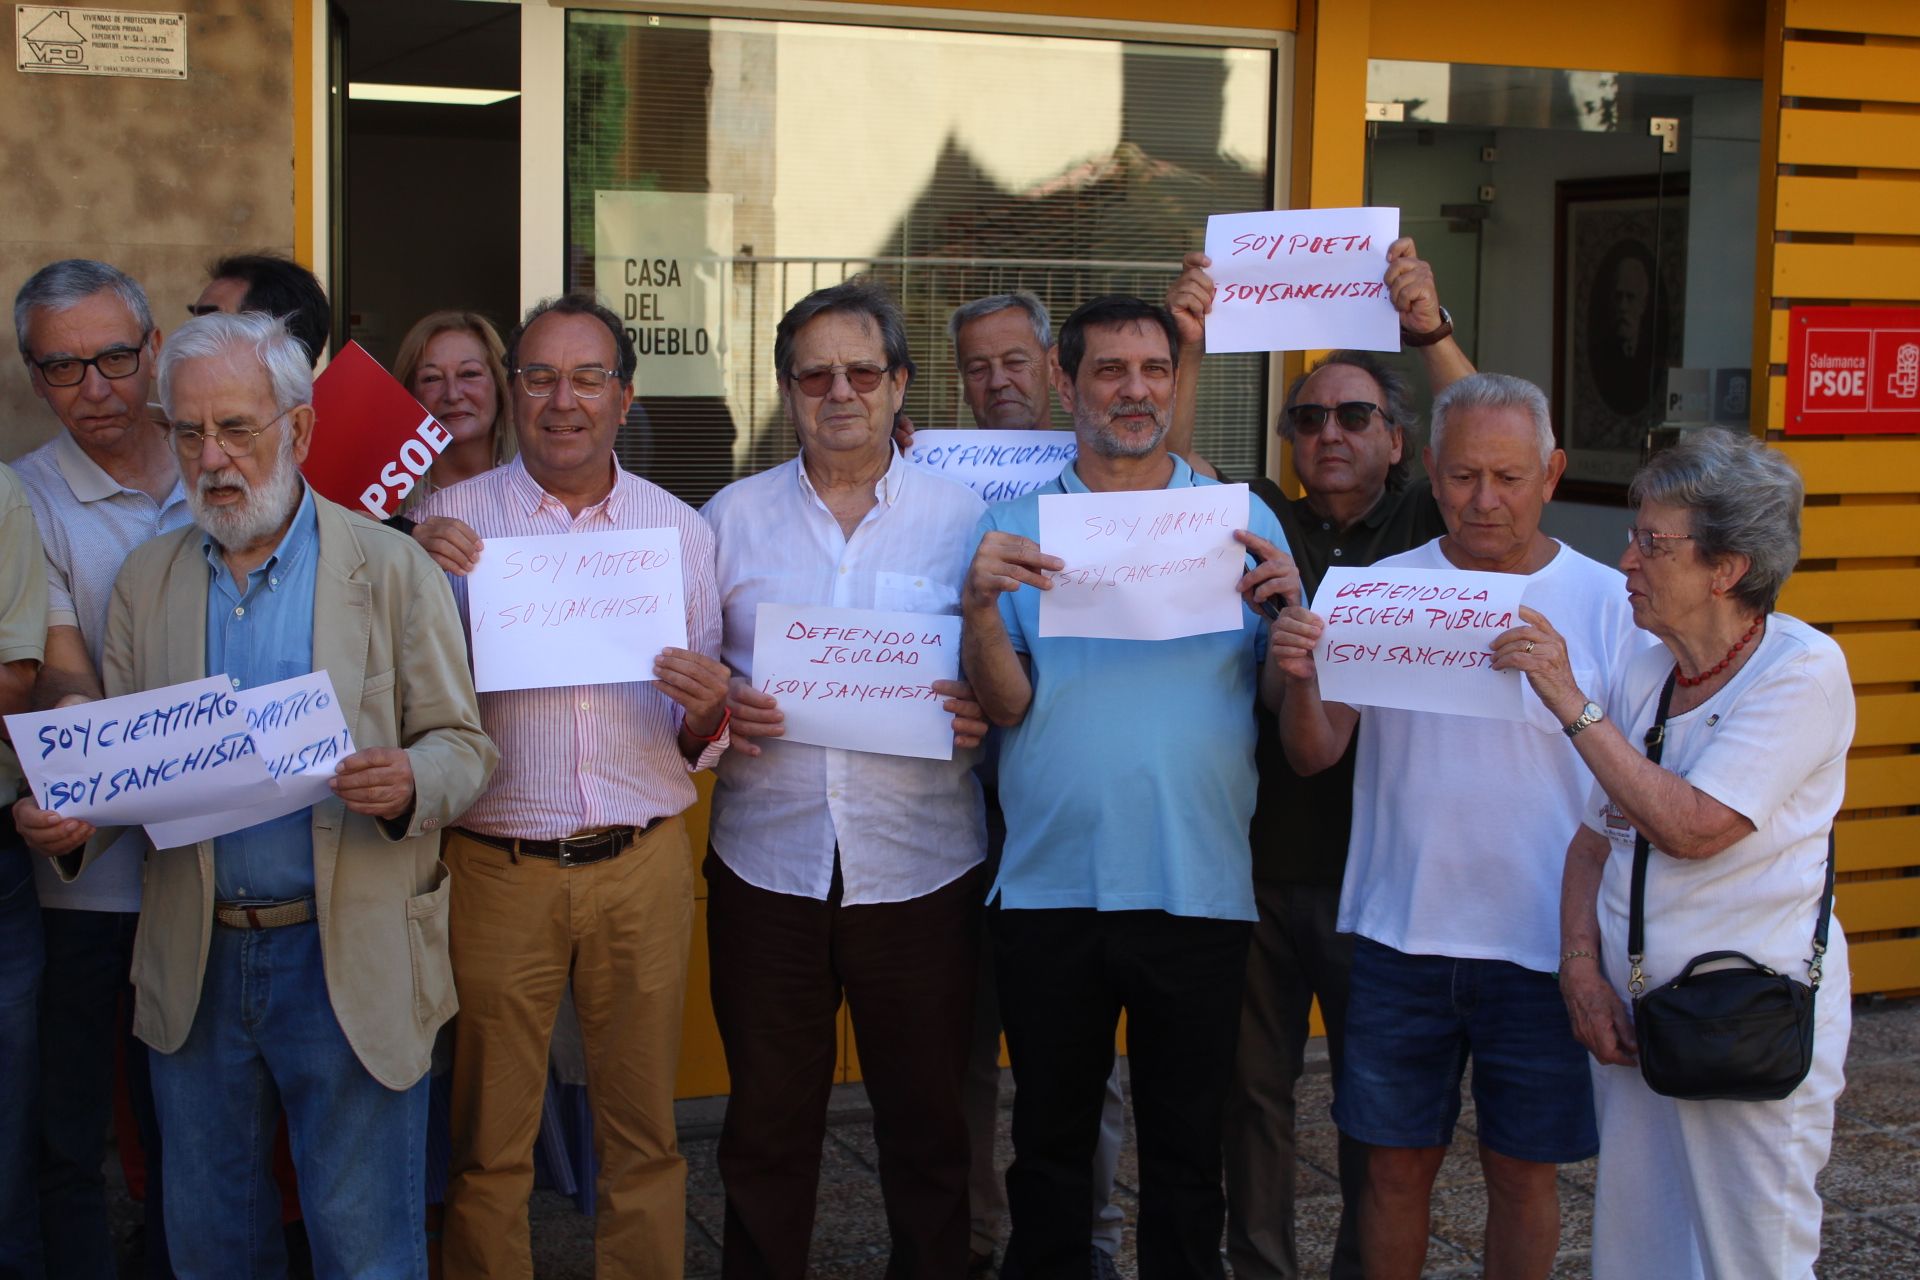 Los militantes del PSOE muestran su apoyo a Pedro Sanchez